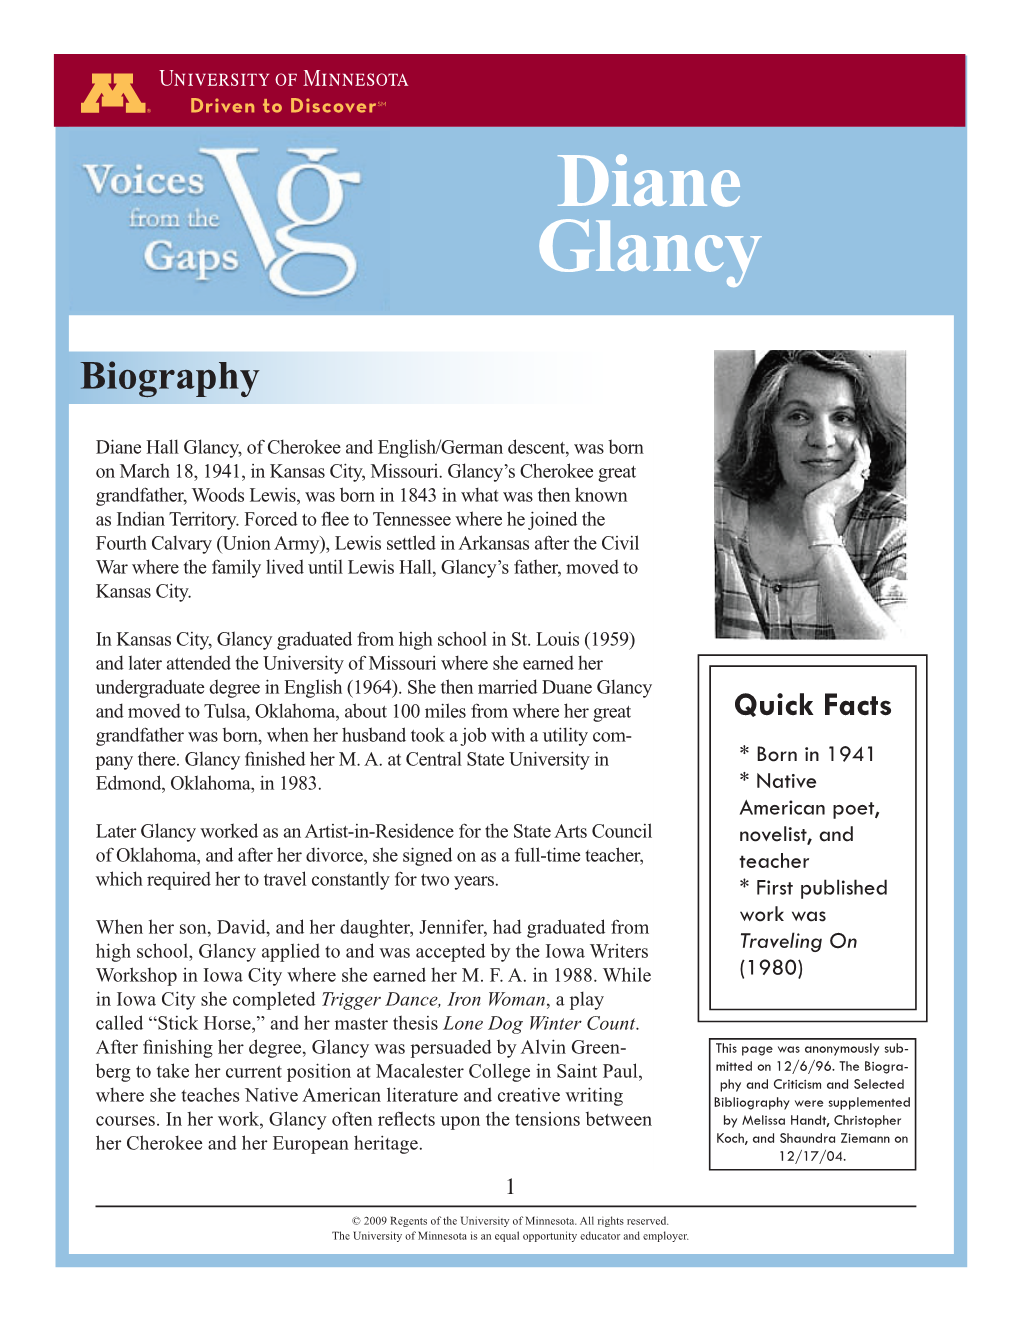 Diane Glancy